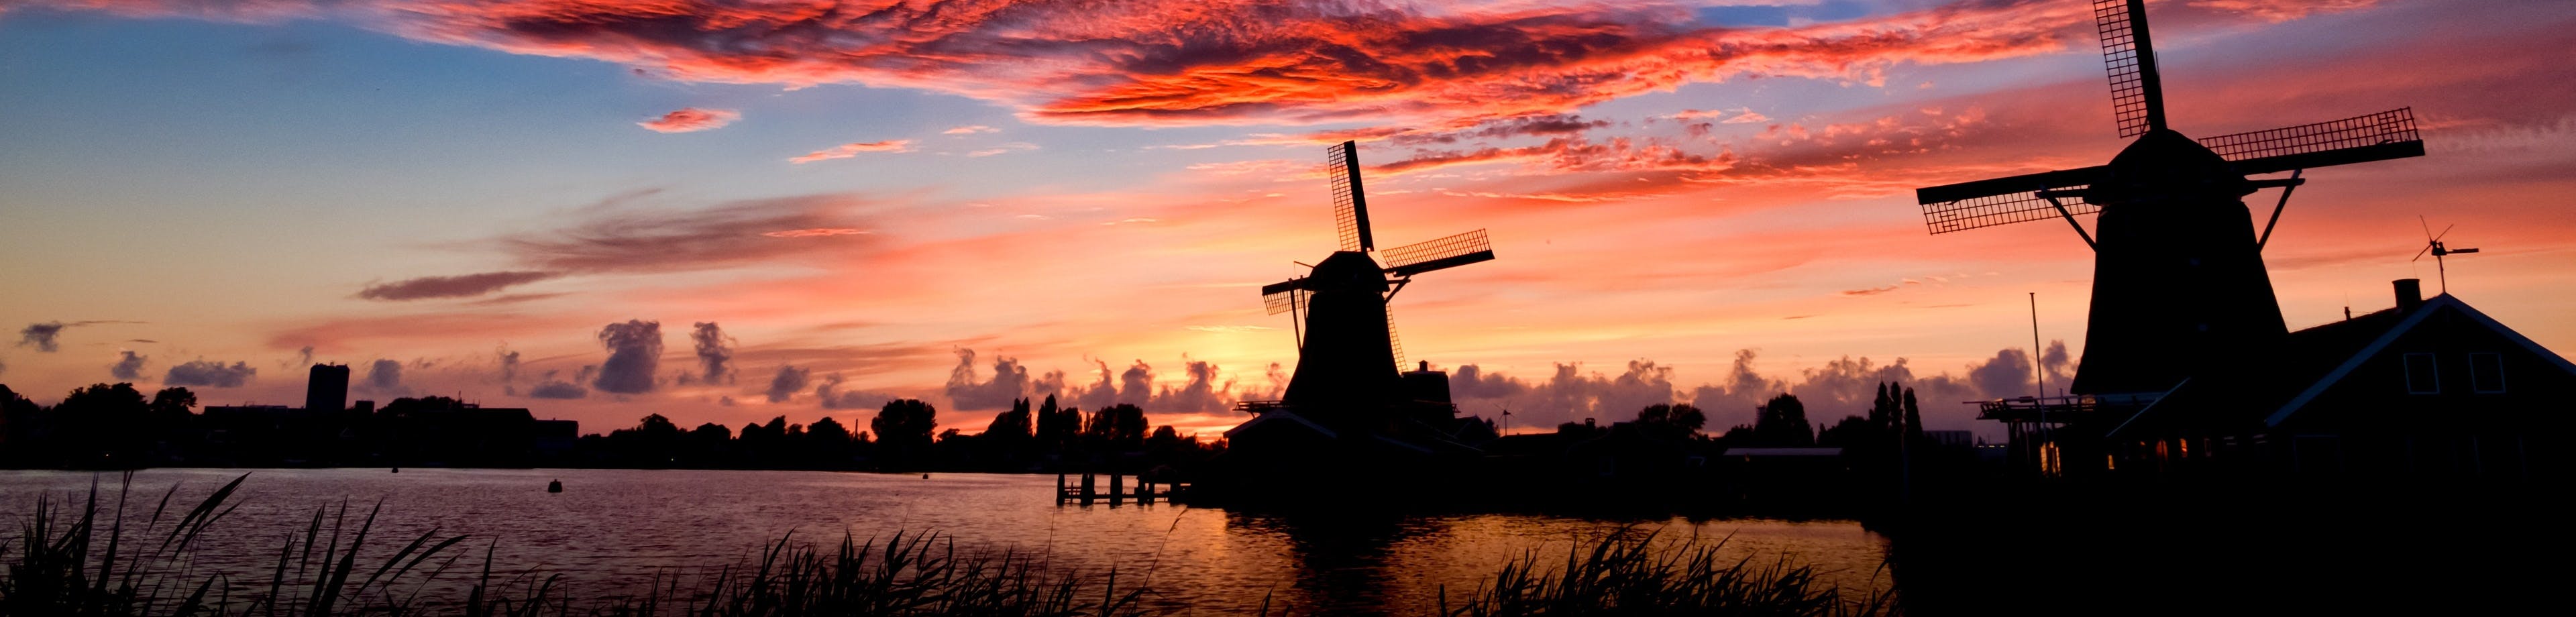 Een Hollands landschap met twee molens, in het avondrood